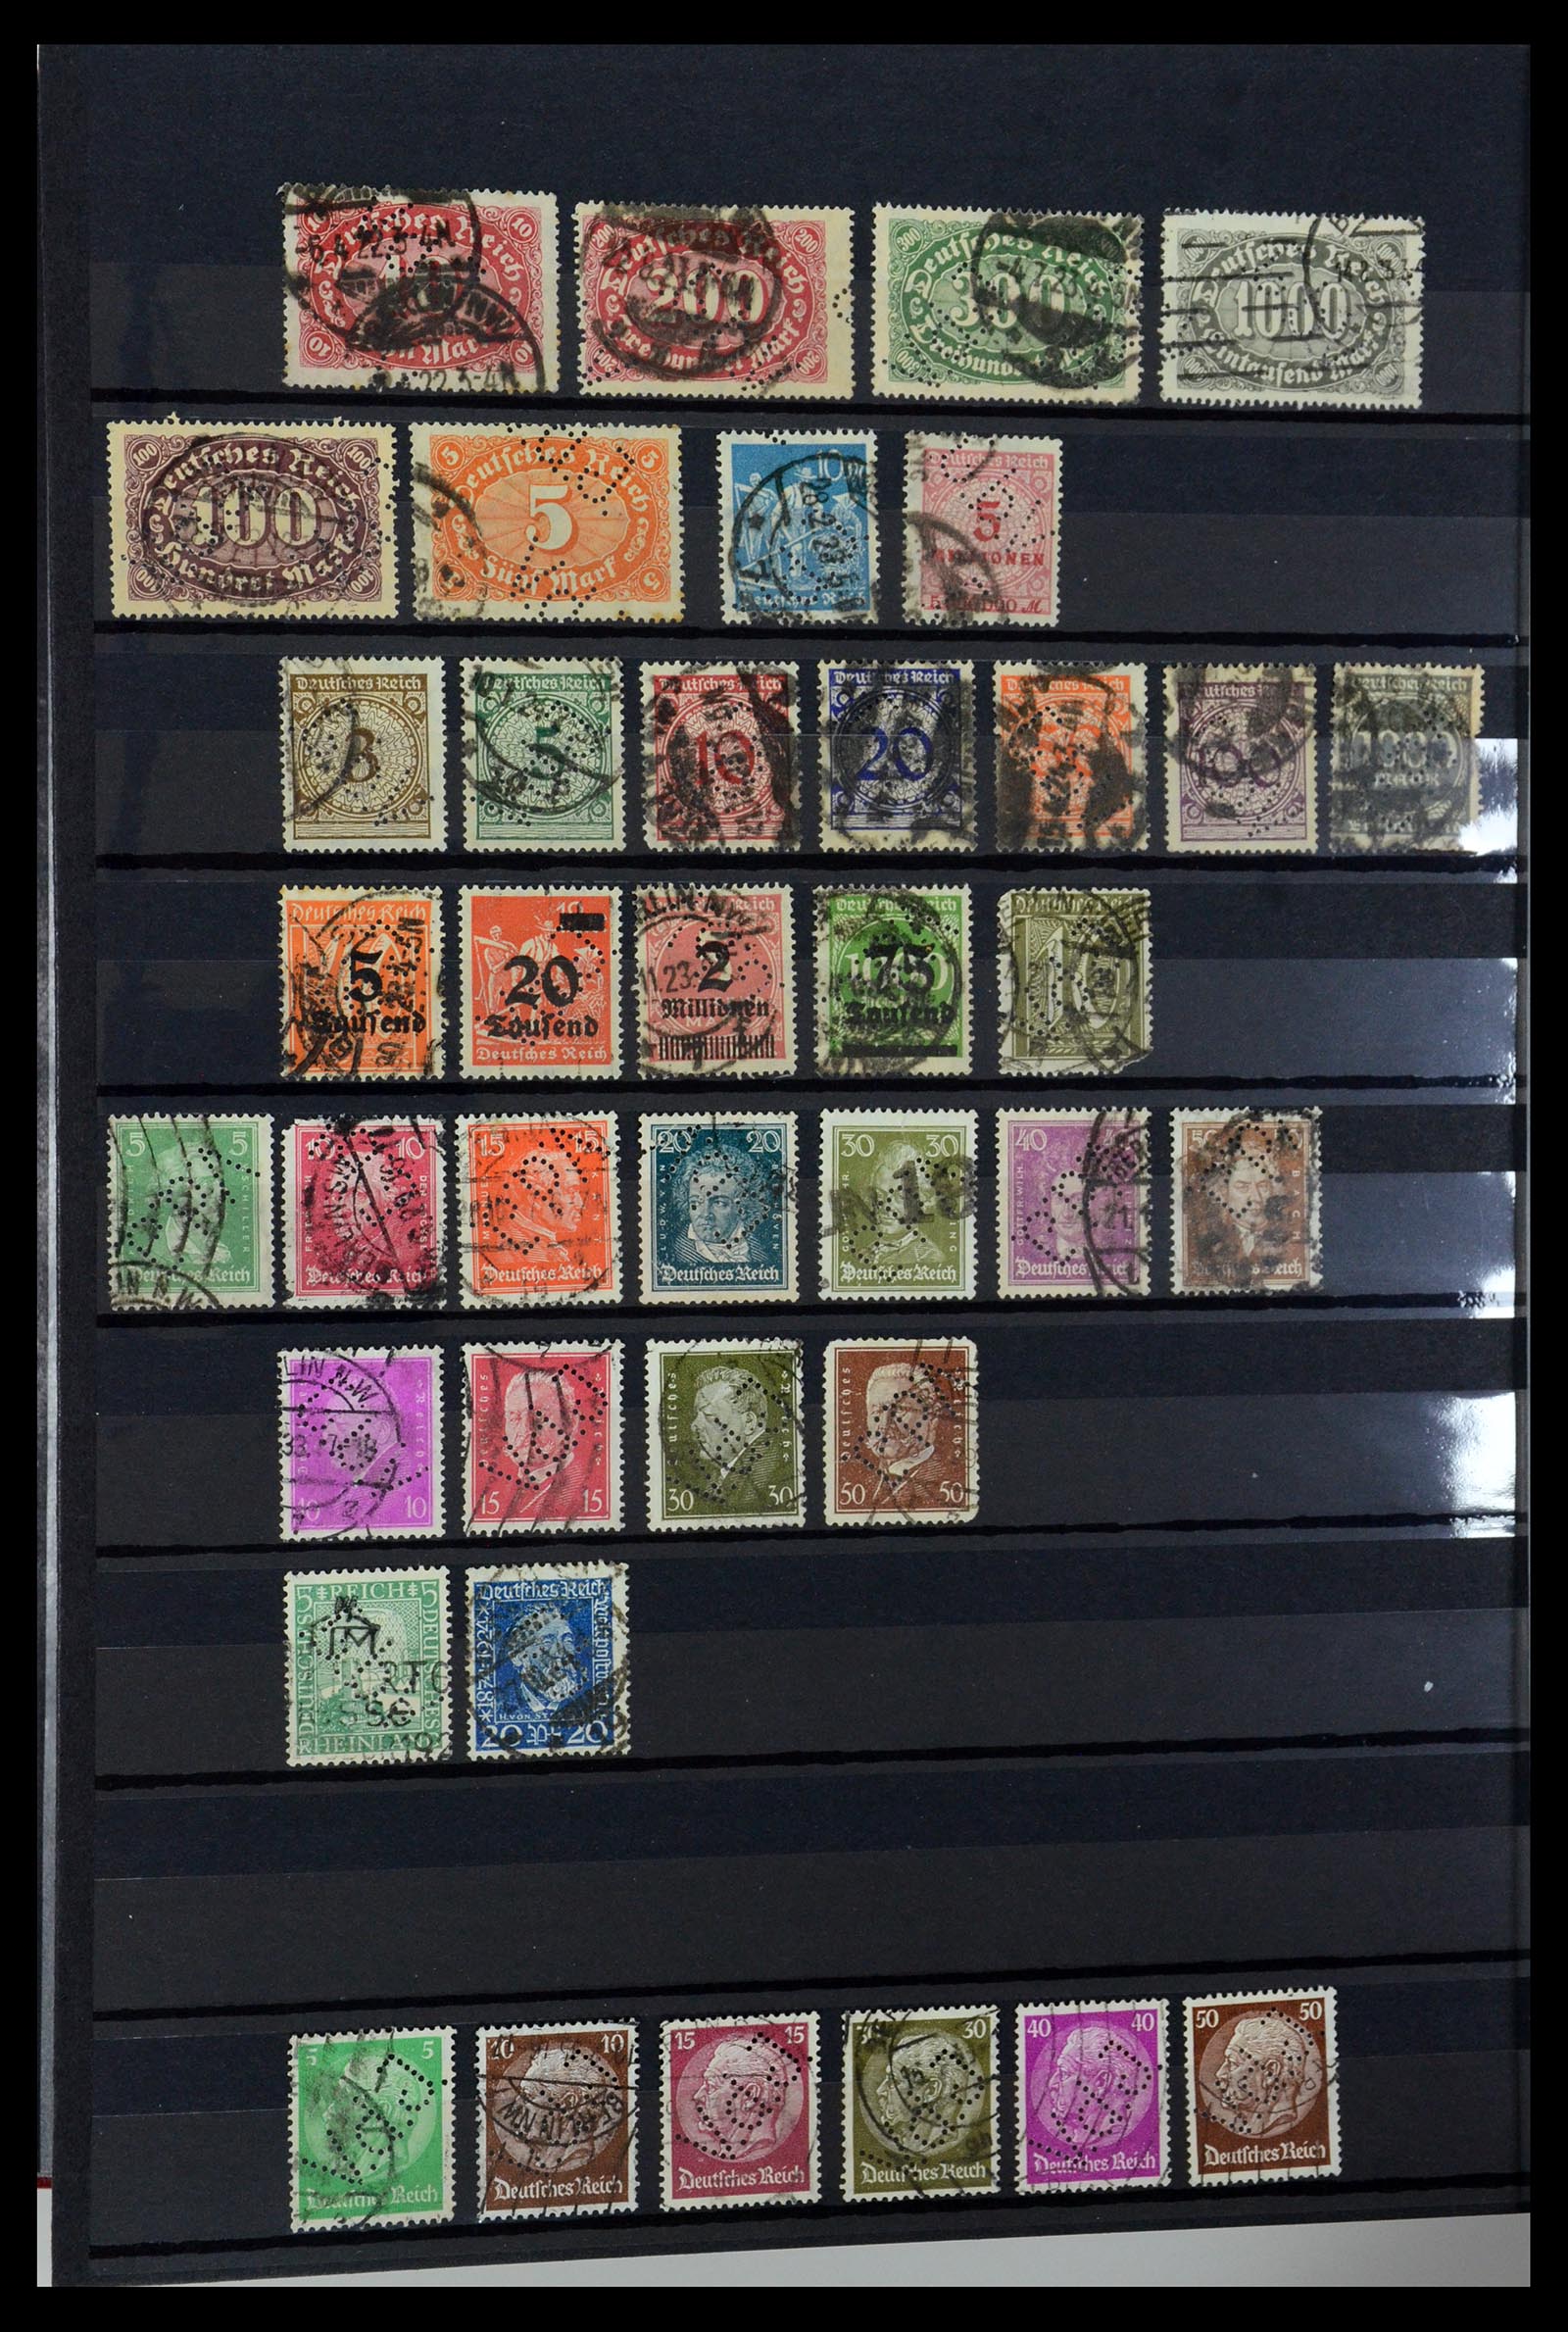 36405 327 - Stamp collection 36405 German Reich perfins 1880-1945.